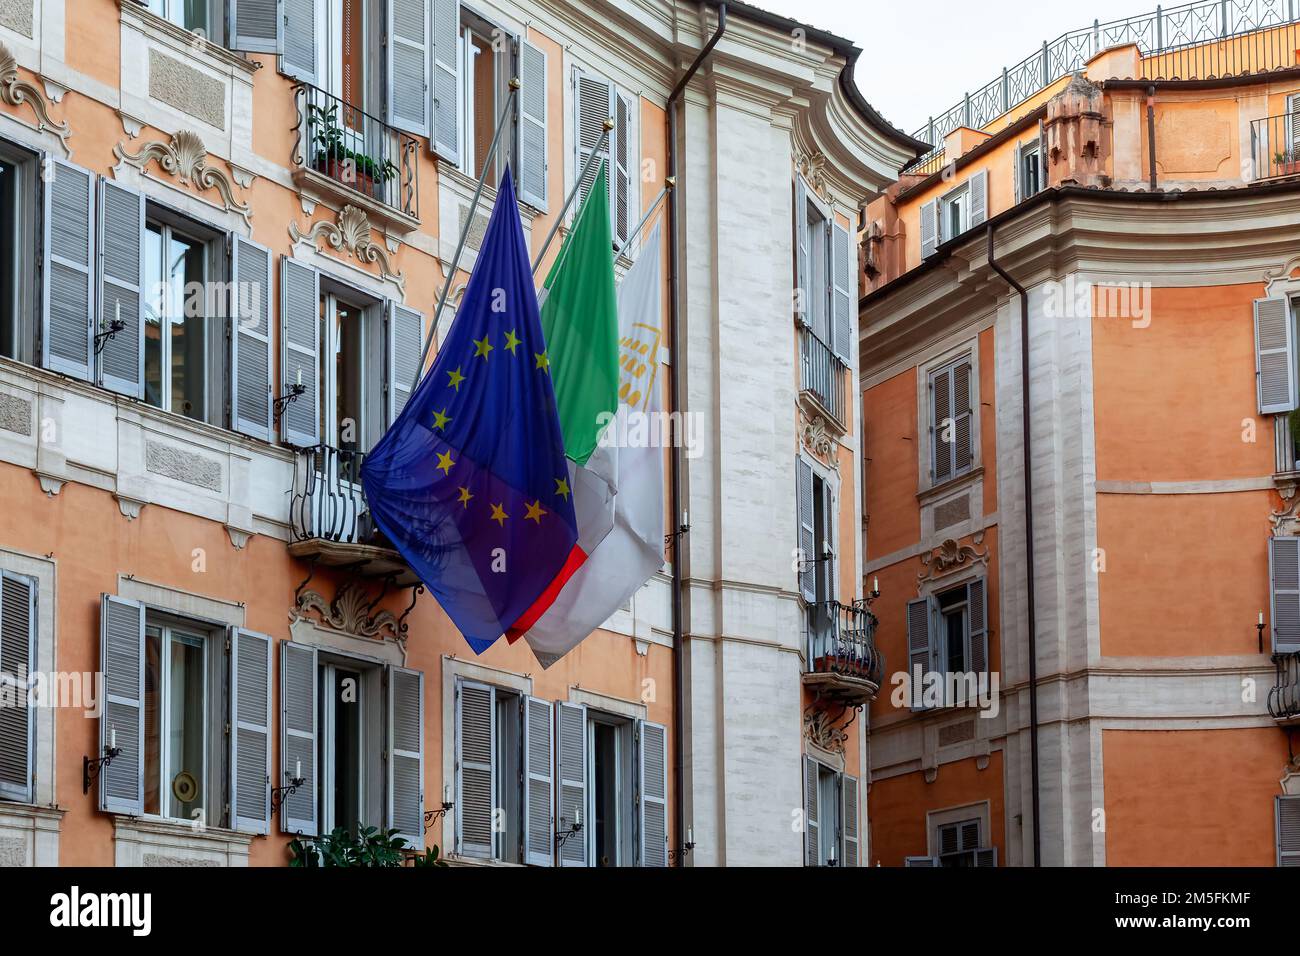 Vecchie strade storiche nel centro di Roma, Italia. Bandiere sul balcone Foto Stock